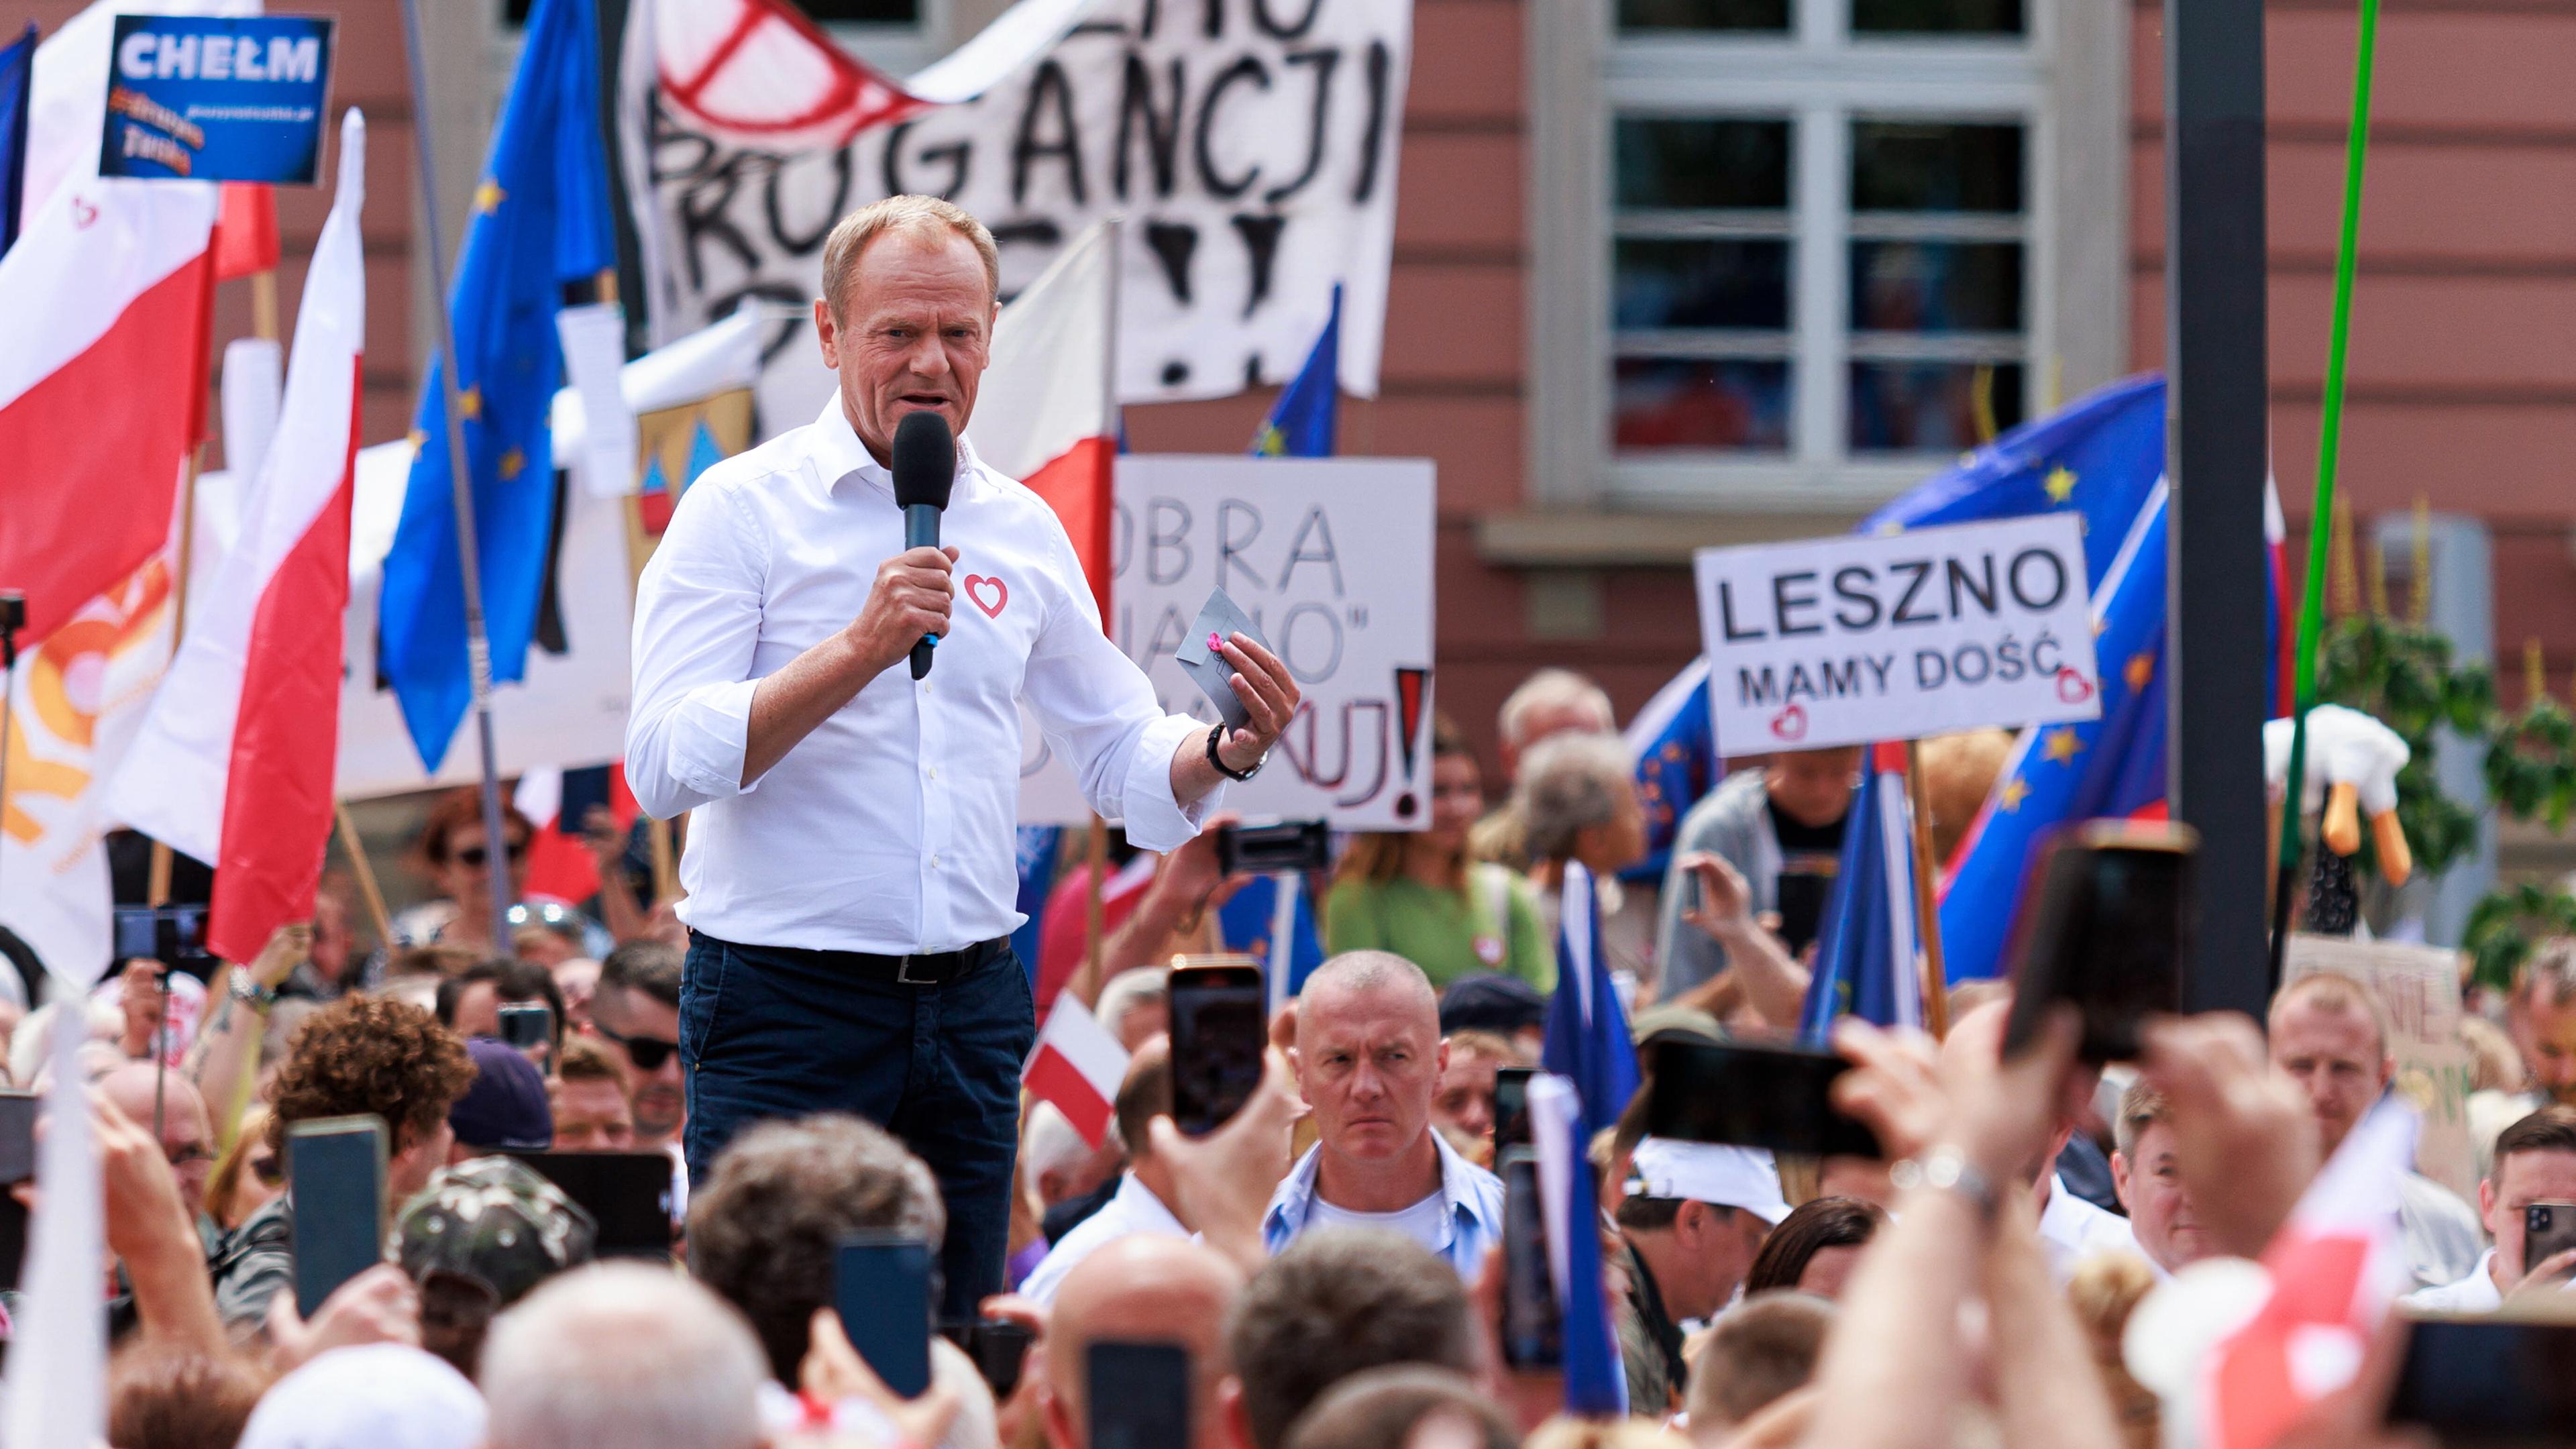 Der polnische Oppositionsführer Donald Tusk spricht auf einer Kundgebung in Breslau